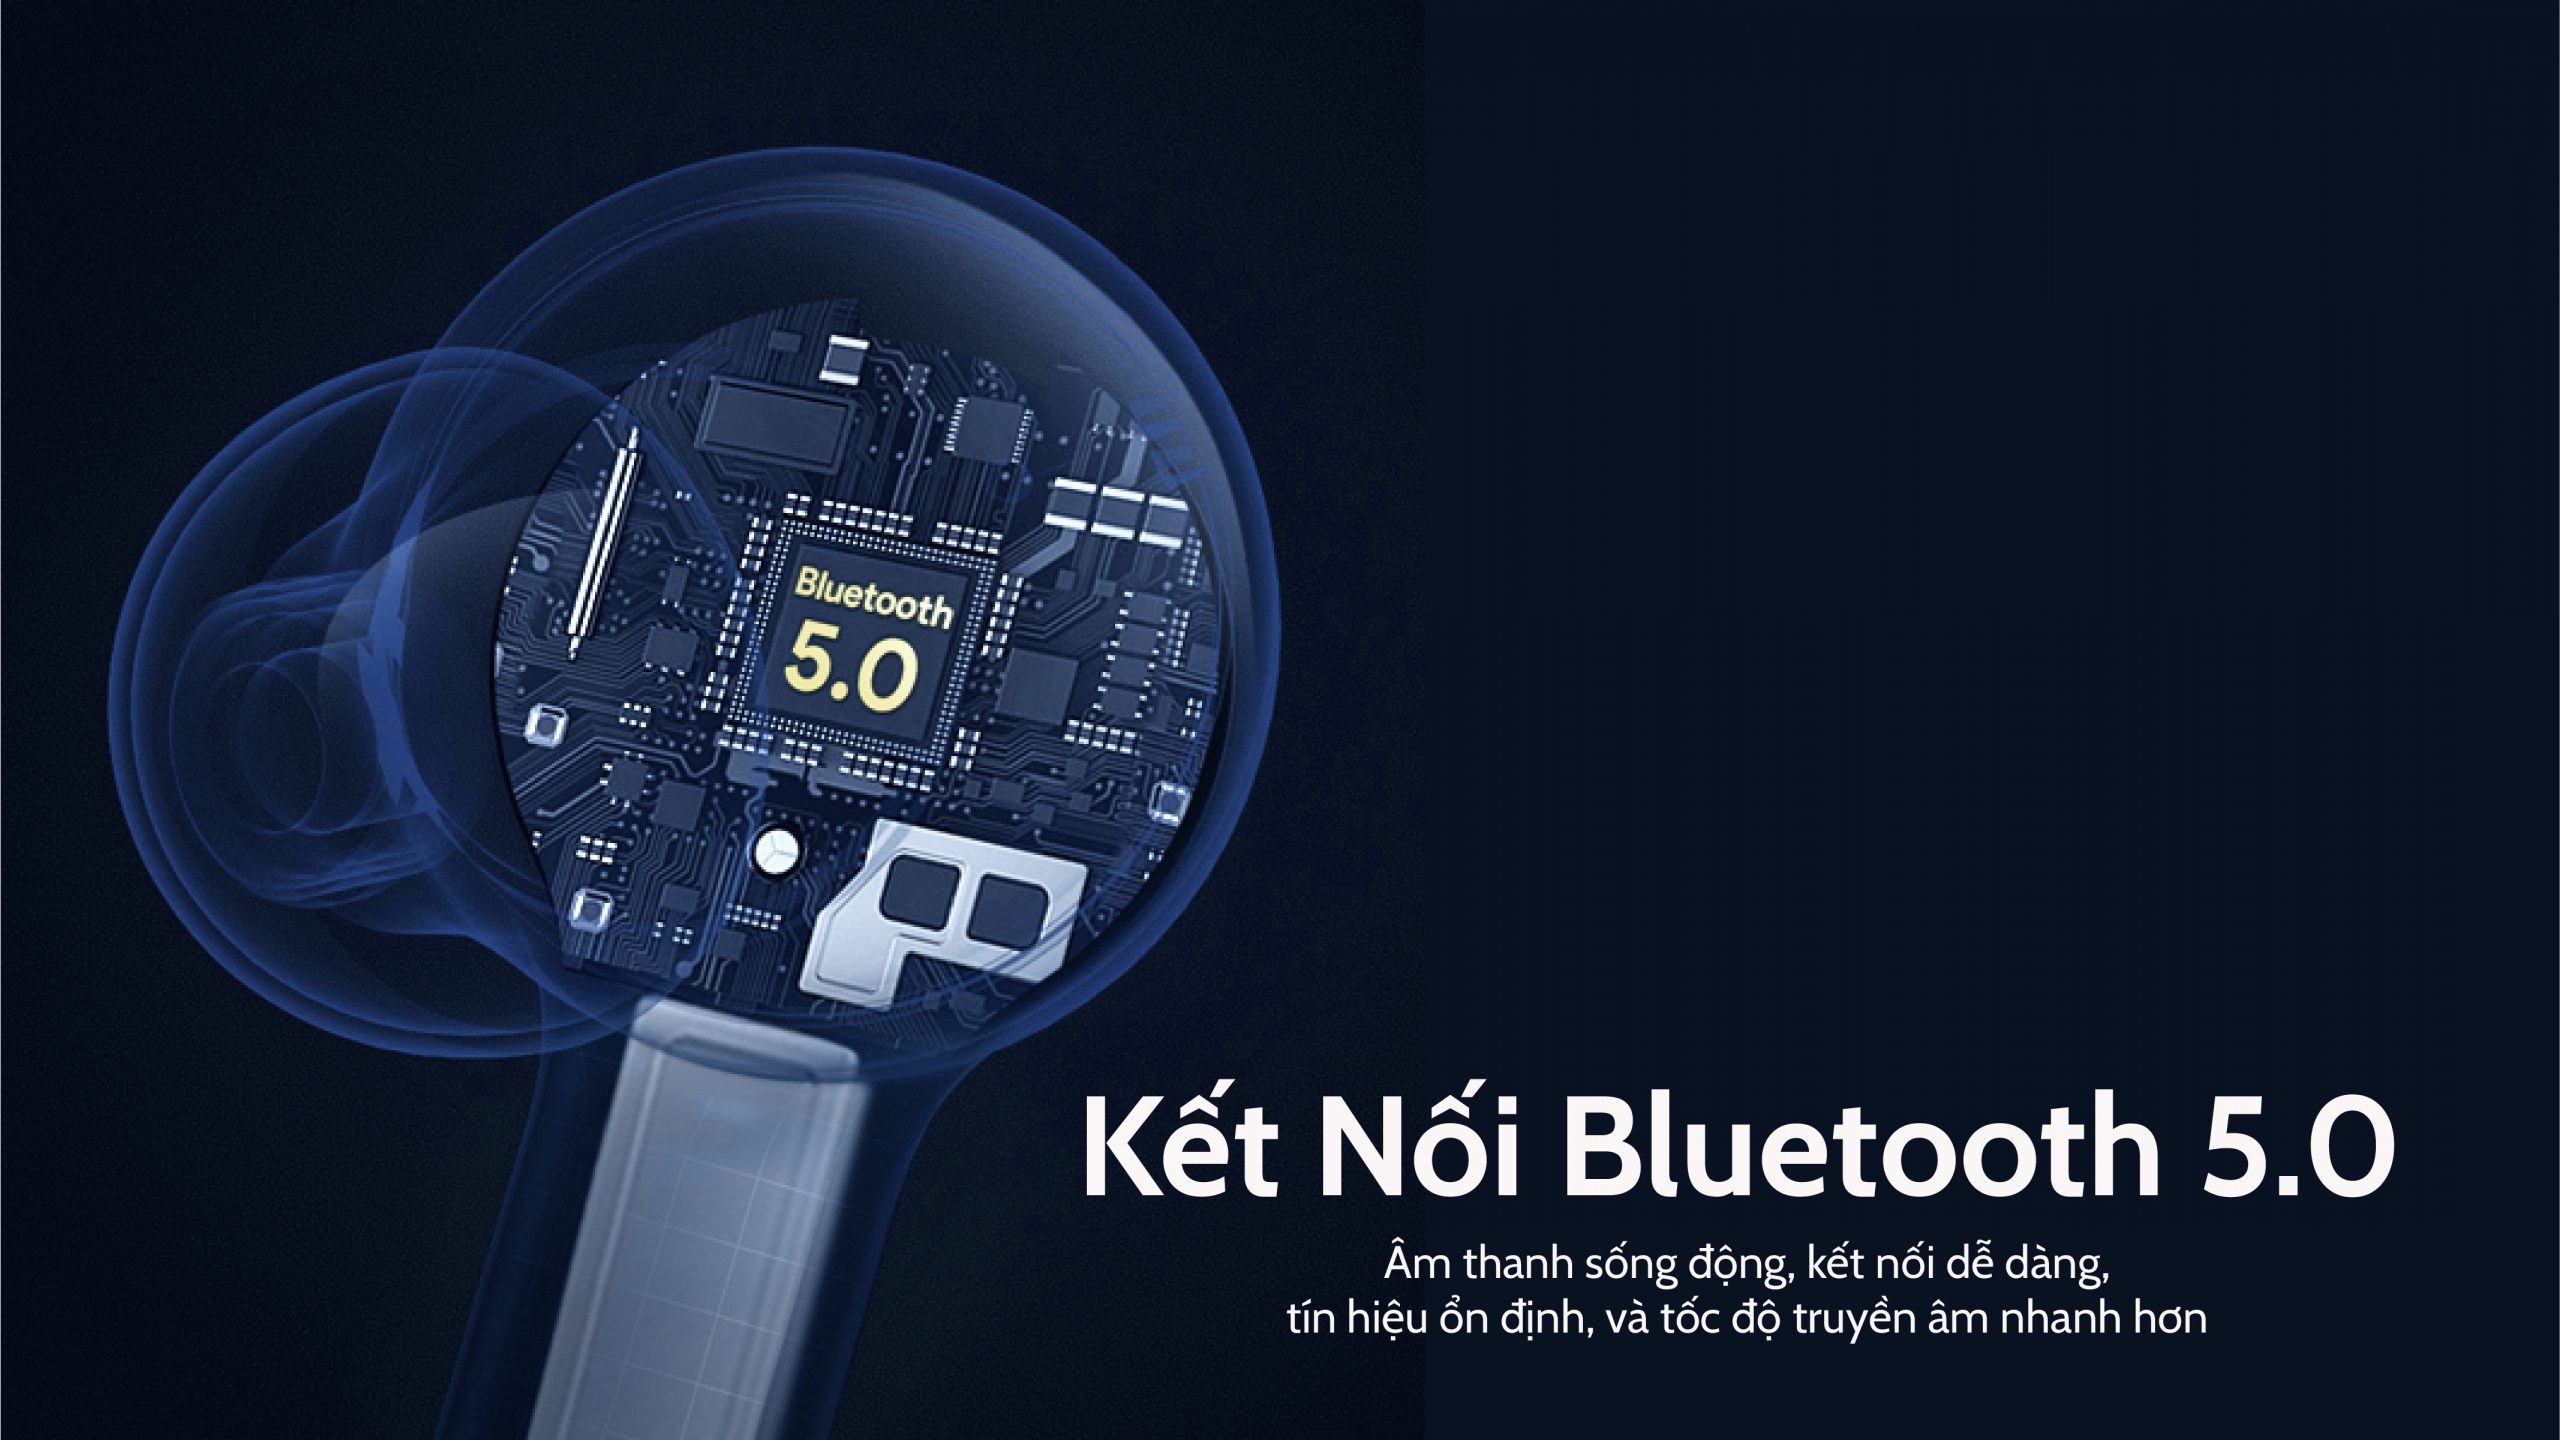 Kết nối Bluetooth 5.0 hiện đại, độ hoàn thiện cao